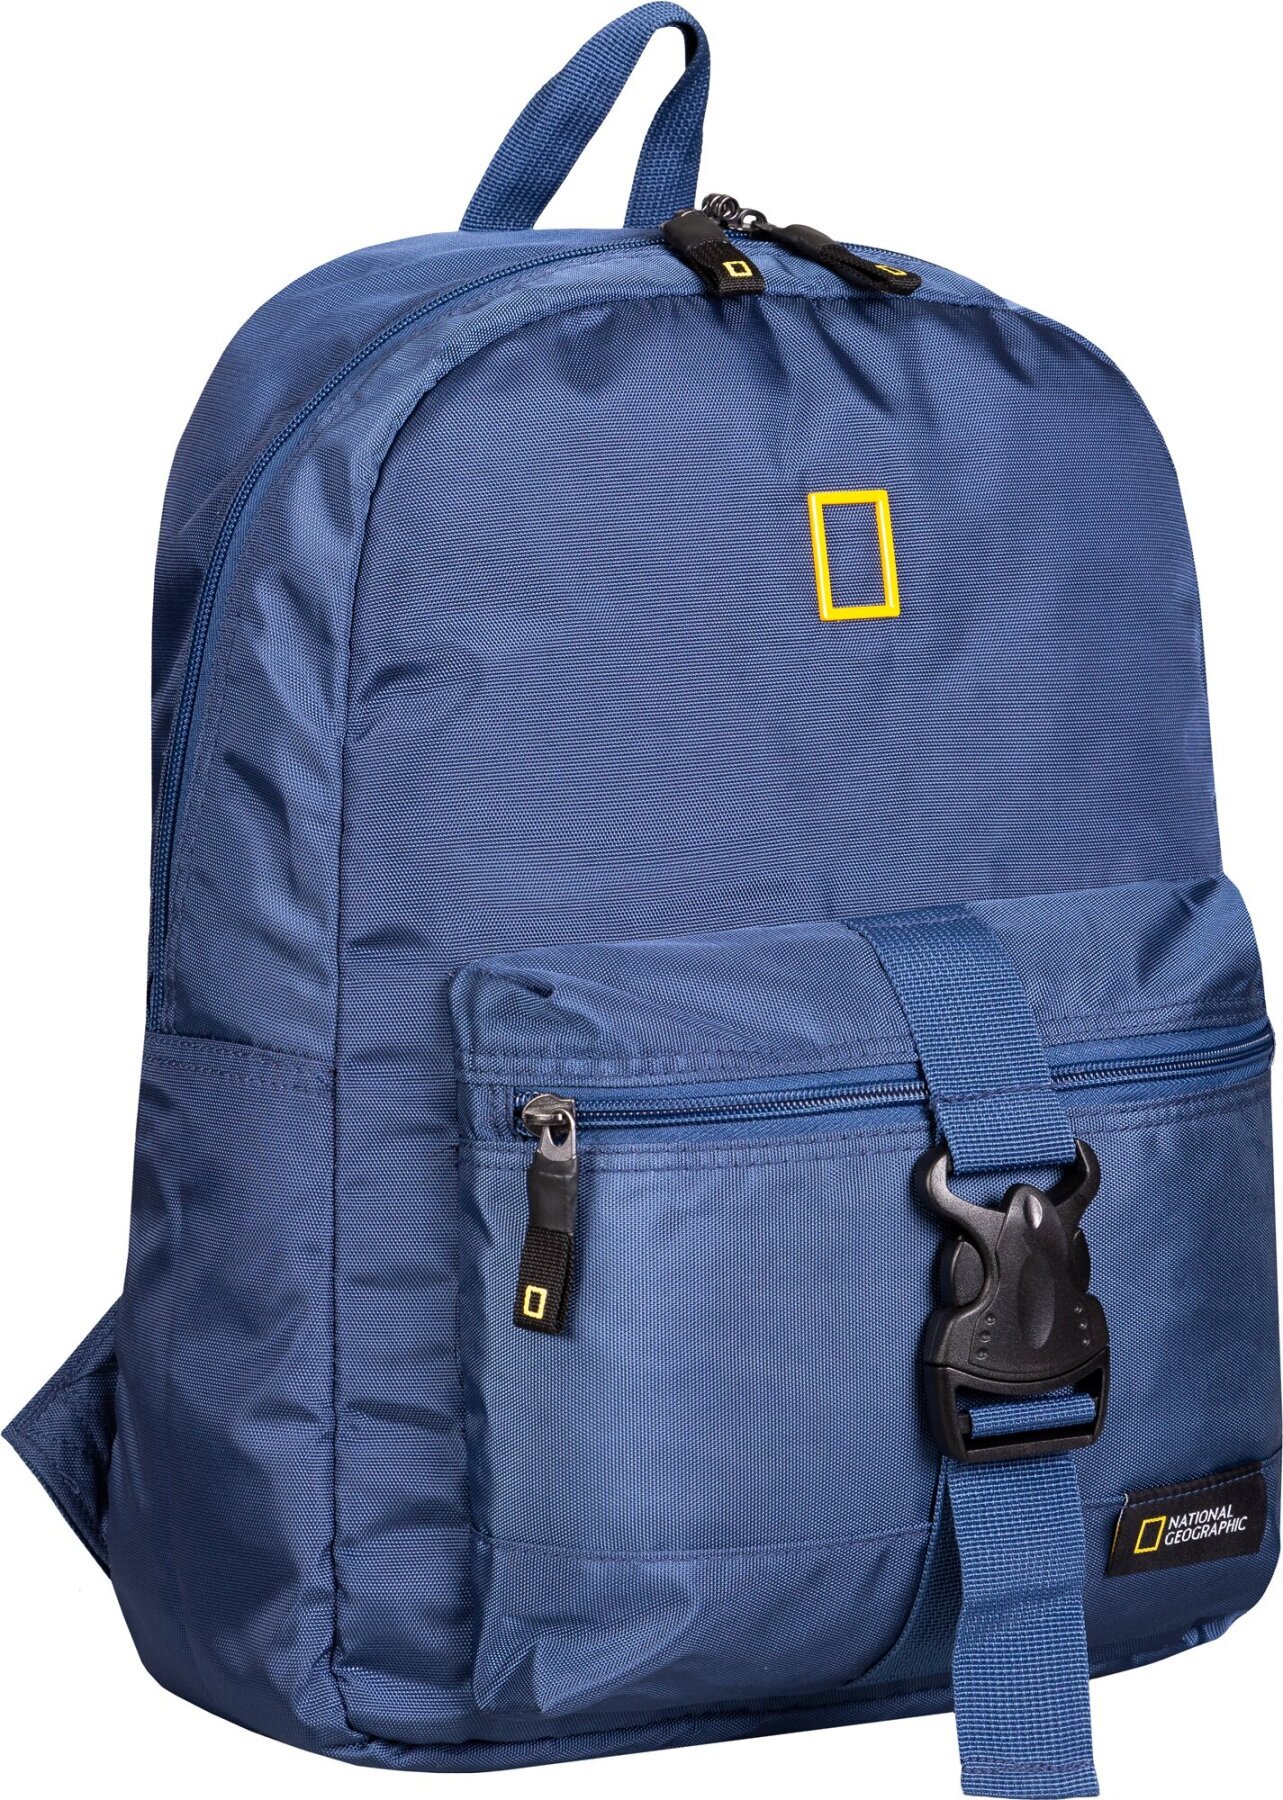 Рюкзак повсякденний (Міський) з відділенням для планшета National Geographic Recovery N14107;39 синій